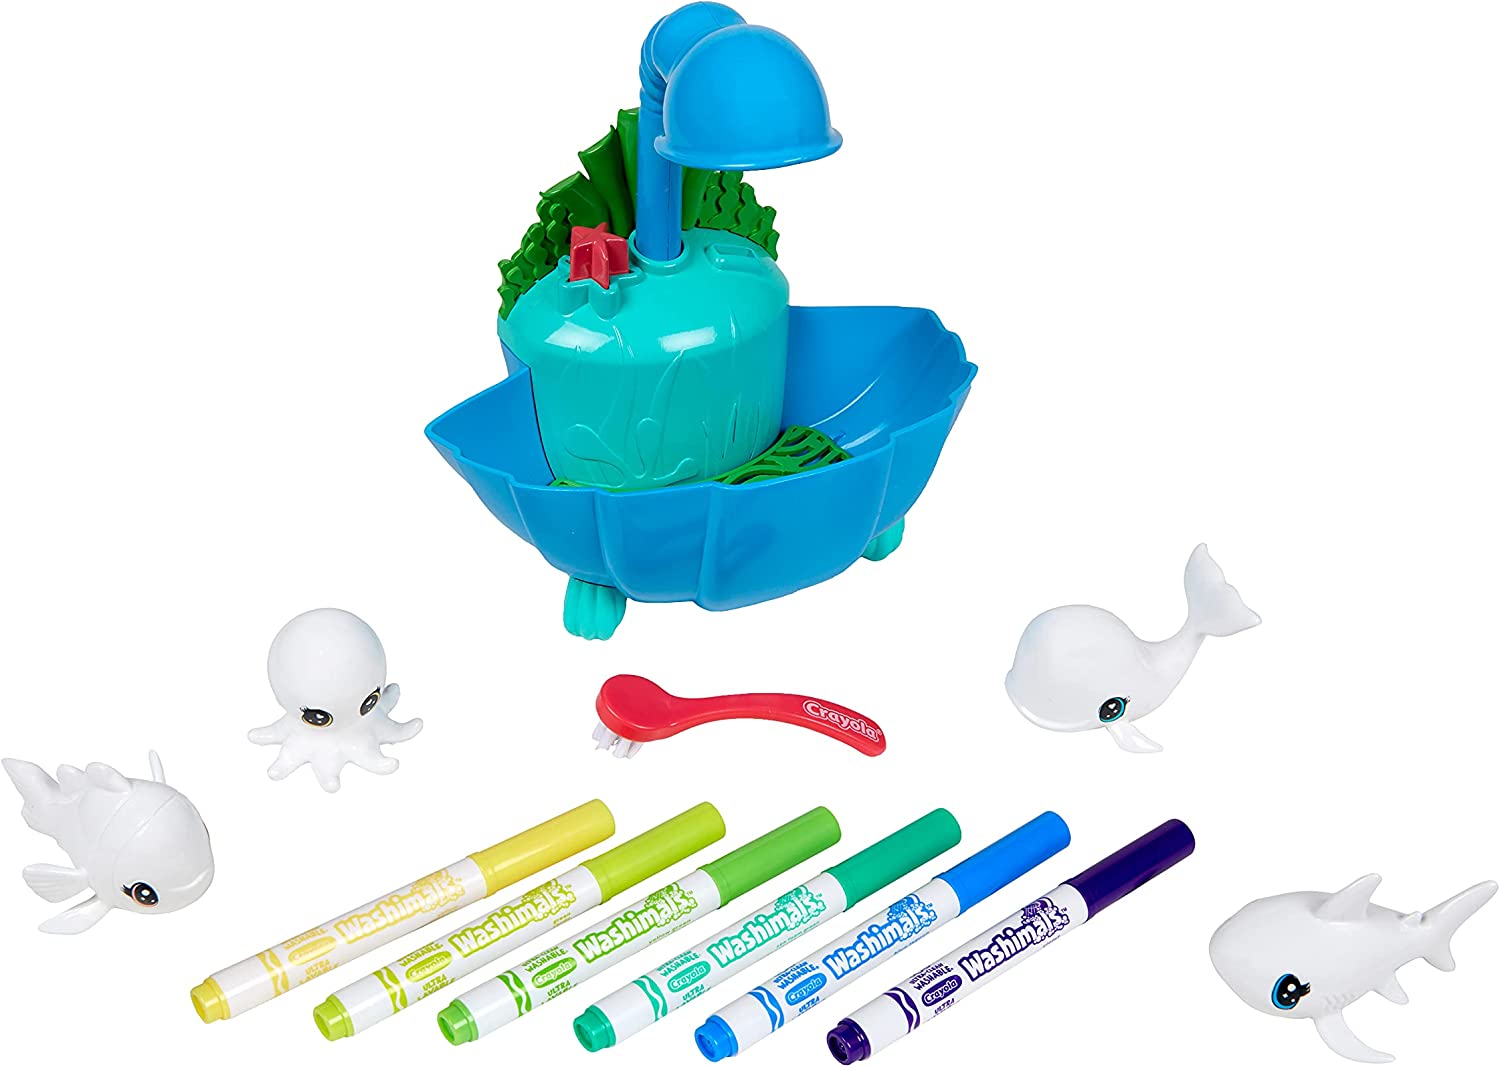 Crayola Washimals Ocean - Lagoon Playset